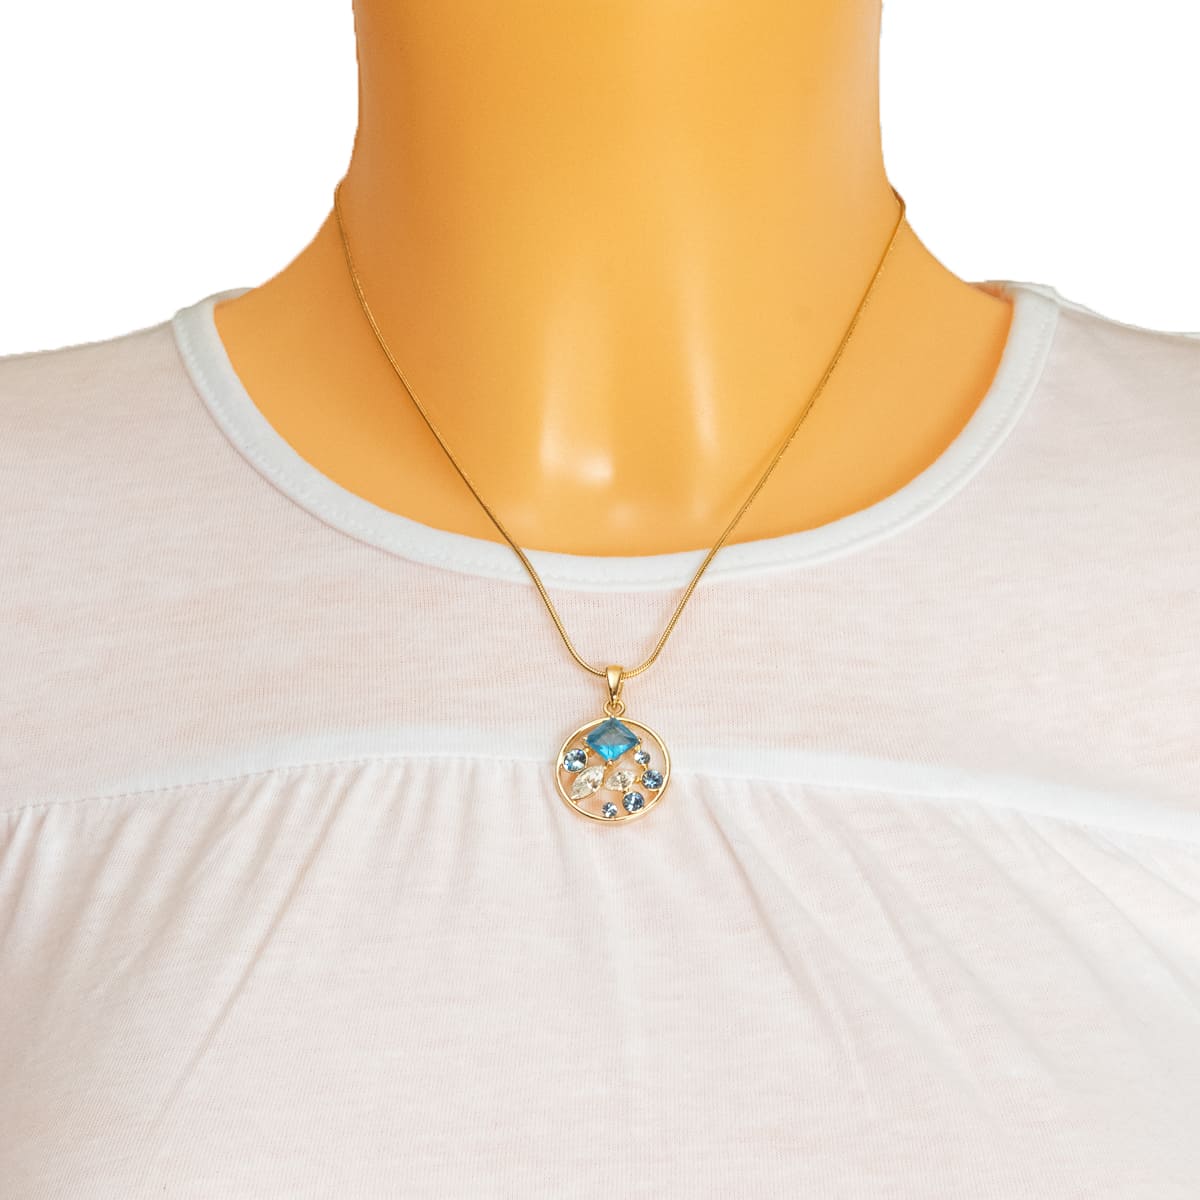 K.V. Fuchs Design Schmuck Damen Halskette in gold mit Schmucksteinen in blau, weiß und Zirkonia in weiß »K-1905«